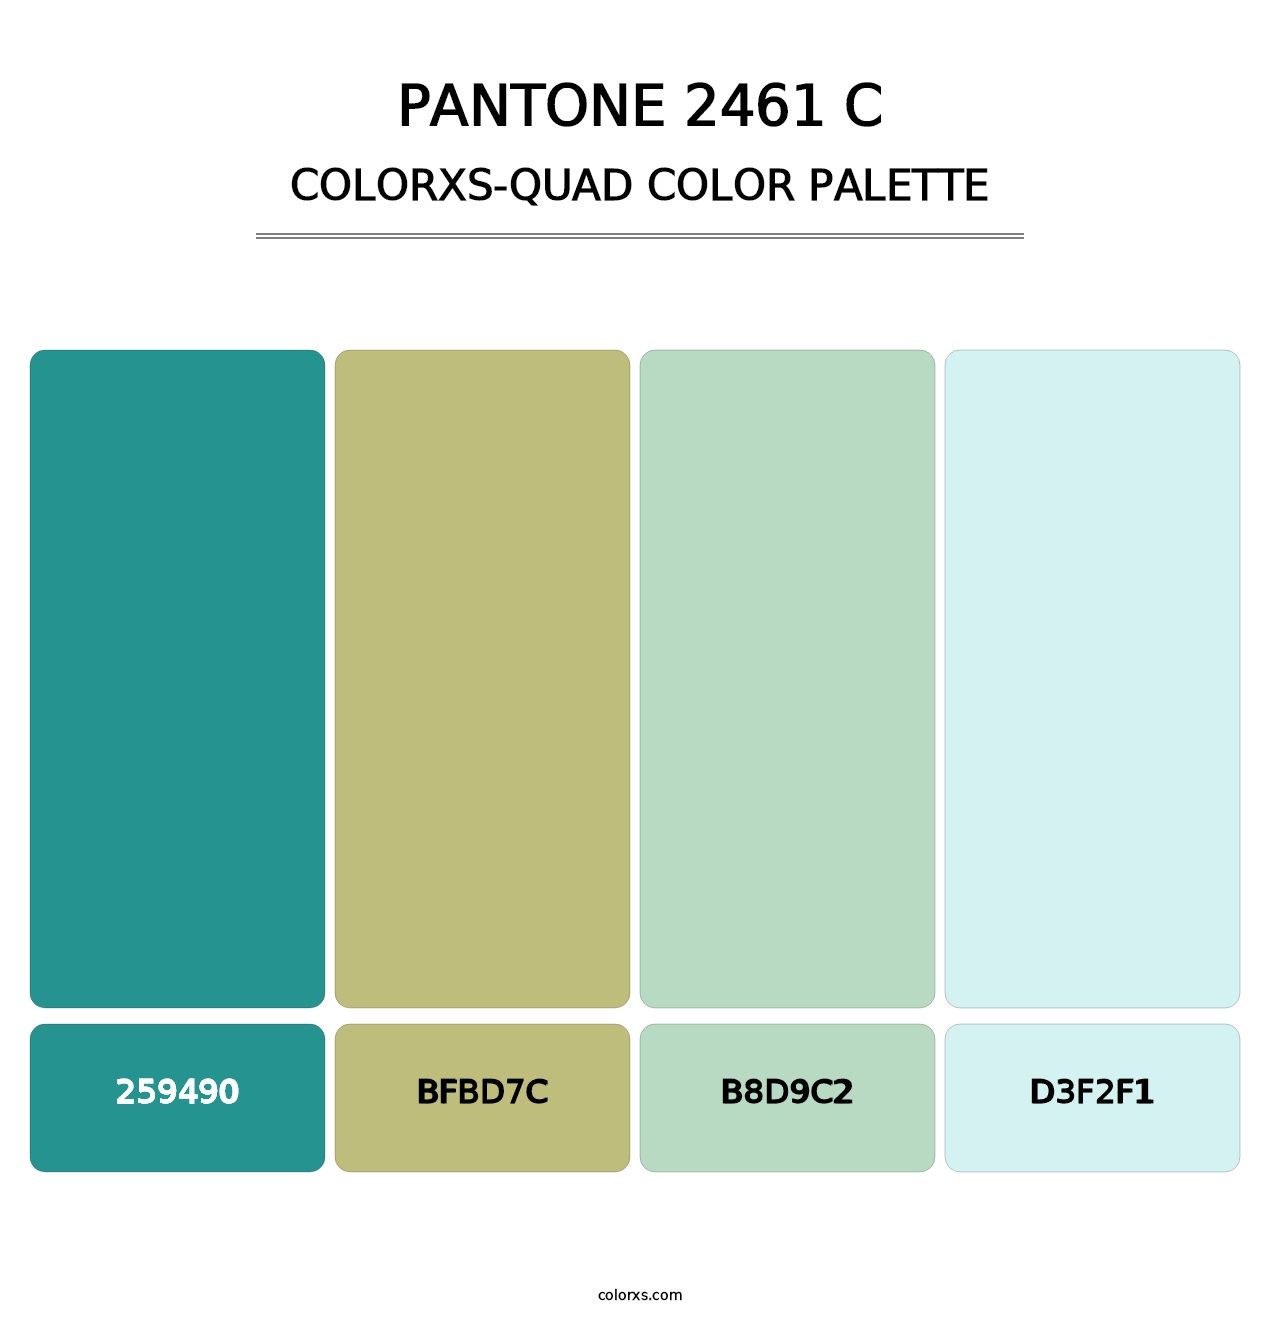 PANTONE 2461 C - Colorxs Quad Palette